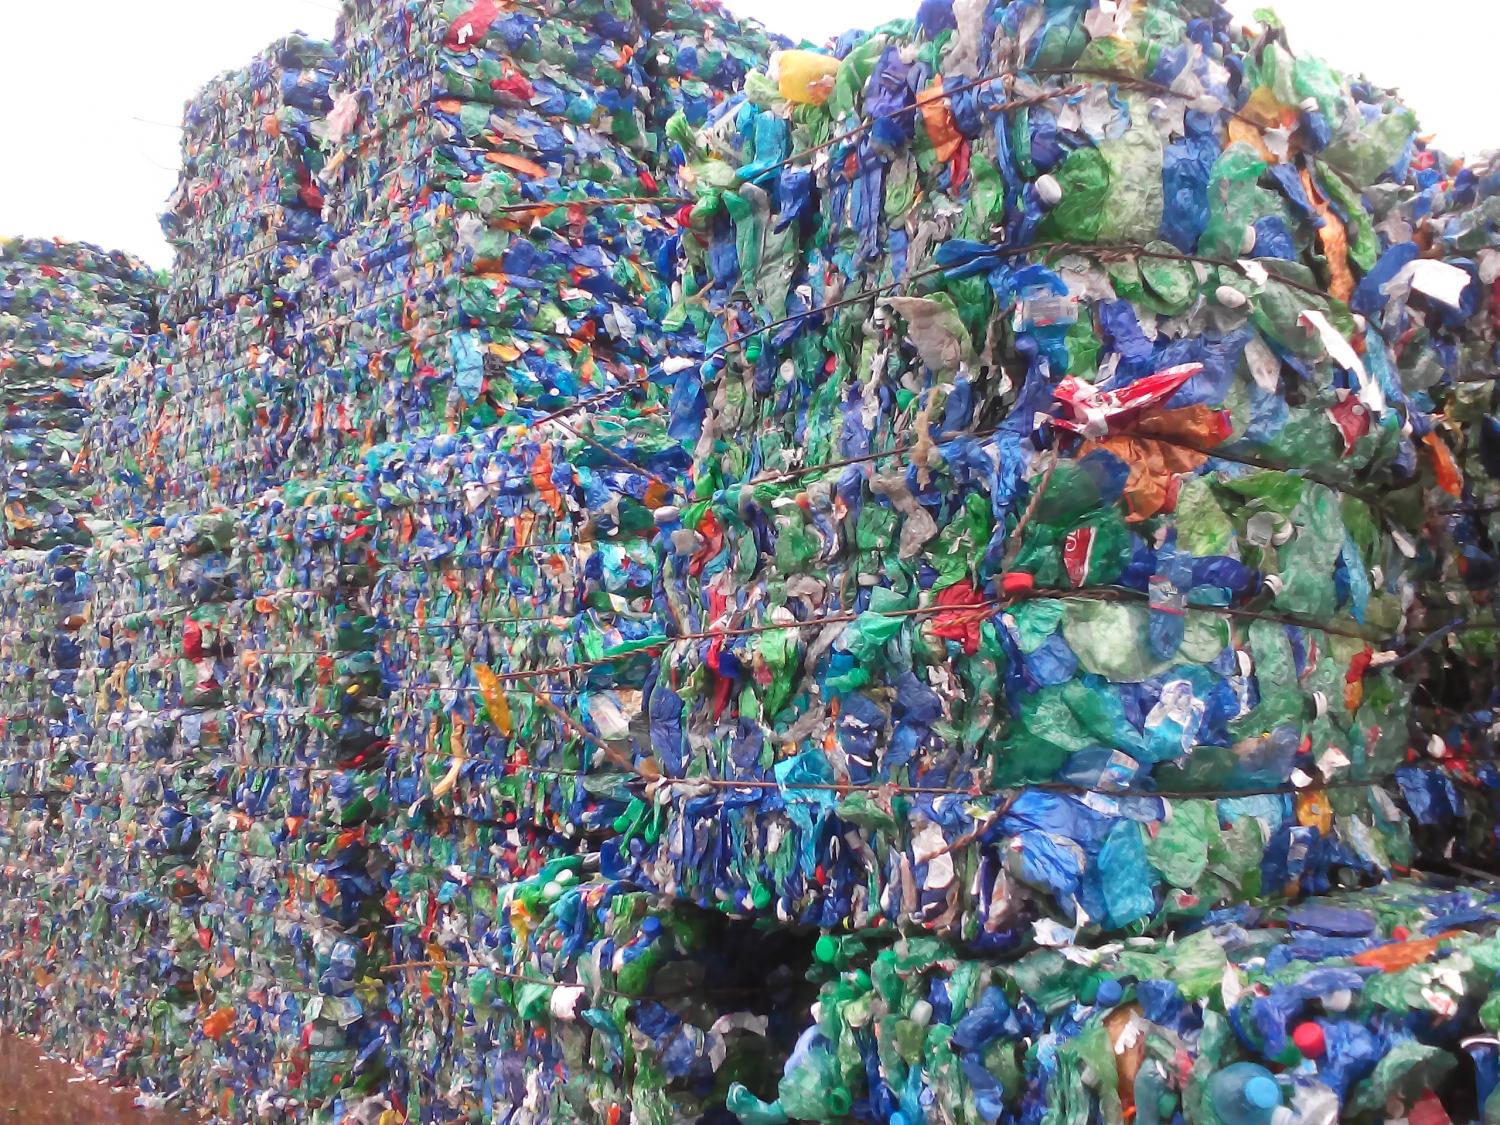 Ecco la ricetta vincente della Norvegia (e non solo) contro lo spreco di plastica